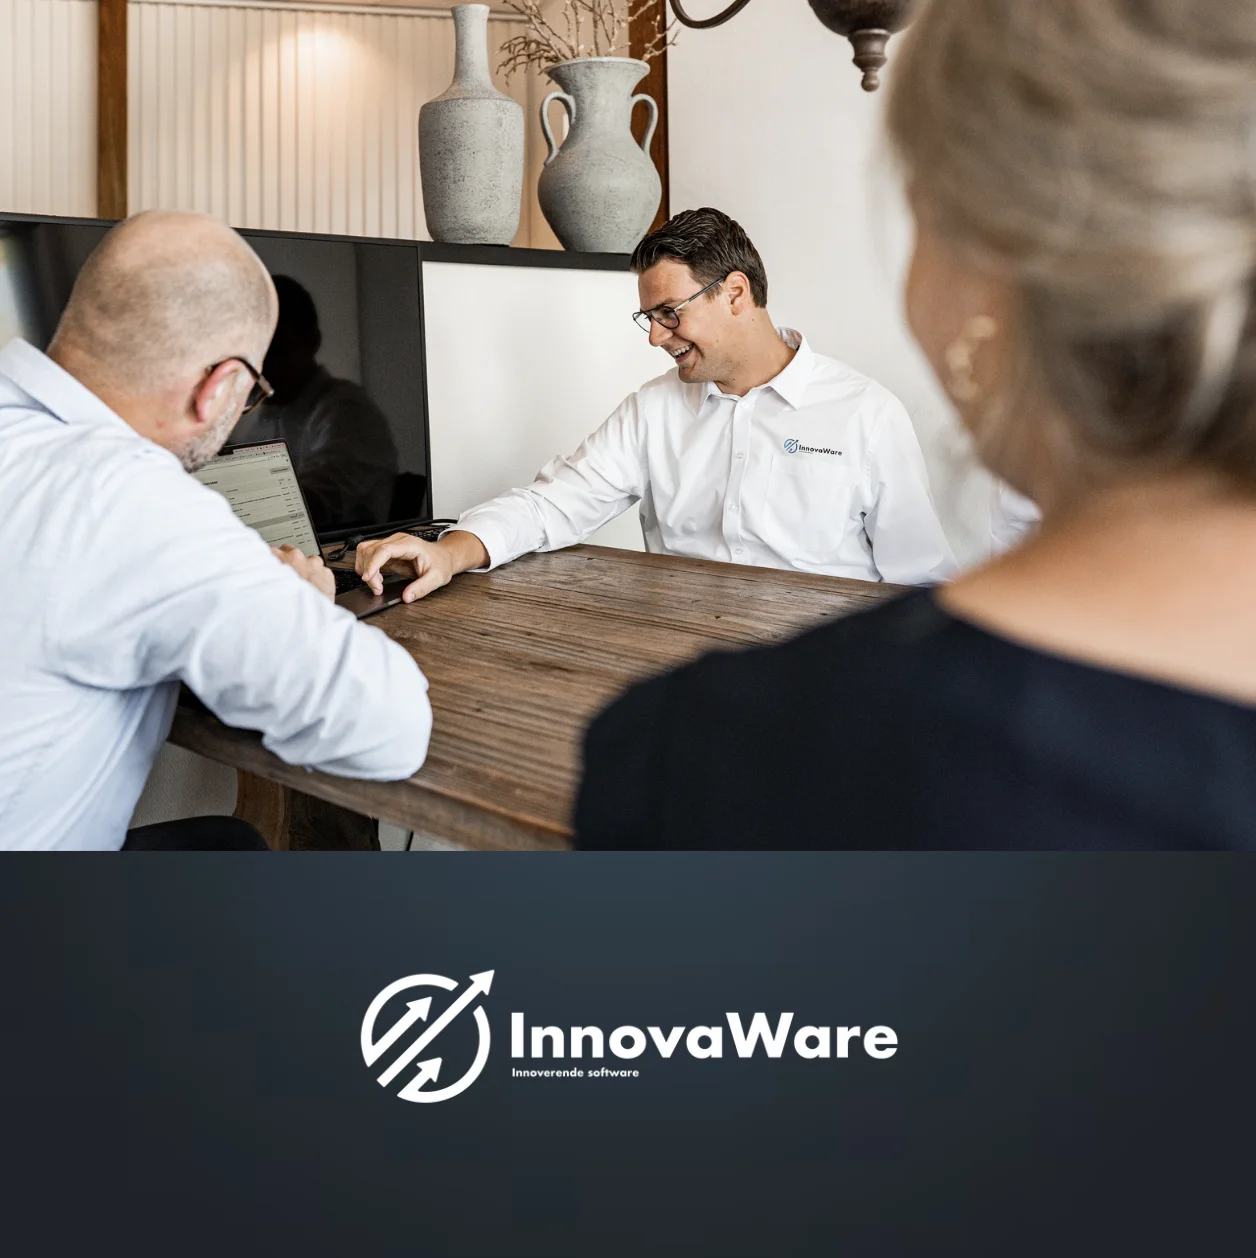 InnovaWare maakt jouw software in de bouwbranche op maat